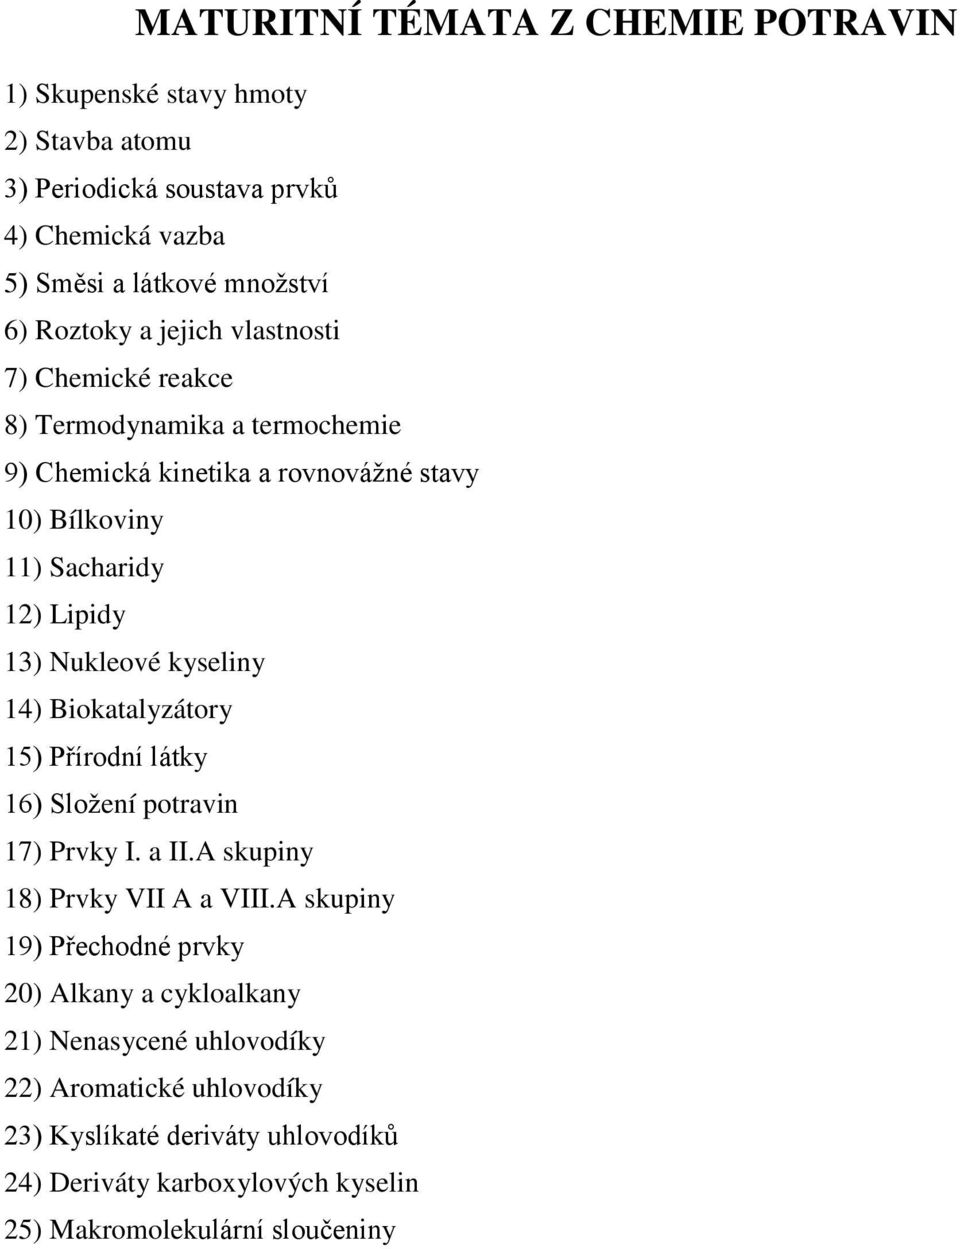 kyseliny 14) Biokatalyzátory 15) Přírodní látky 16) Složení potravin 17) Prvky I. a II.A skupiny 18) Prvky VII A a VIII.